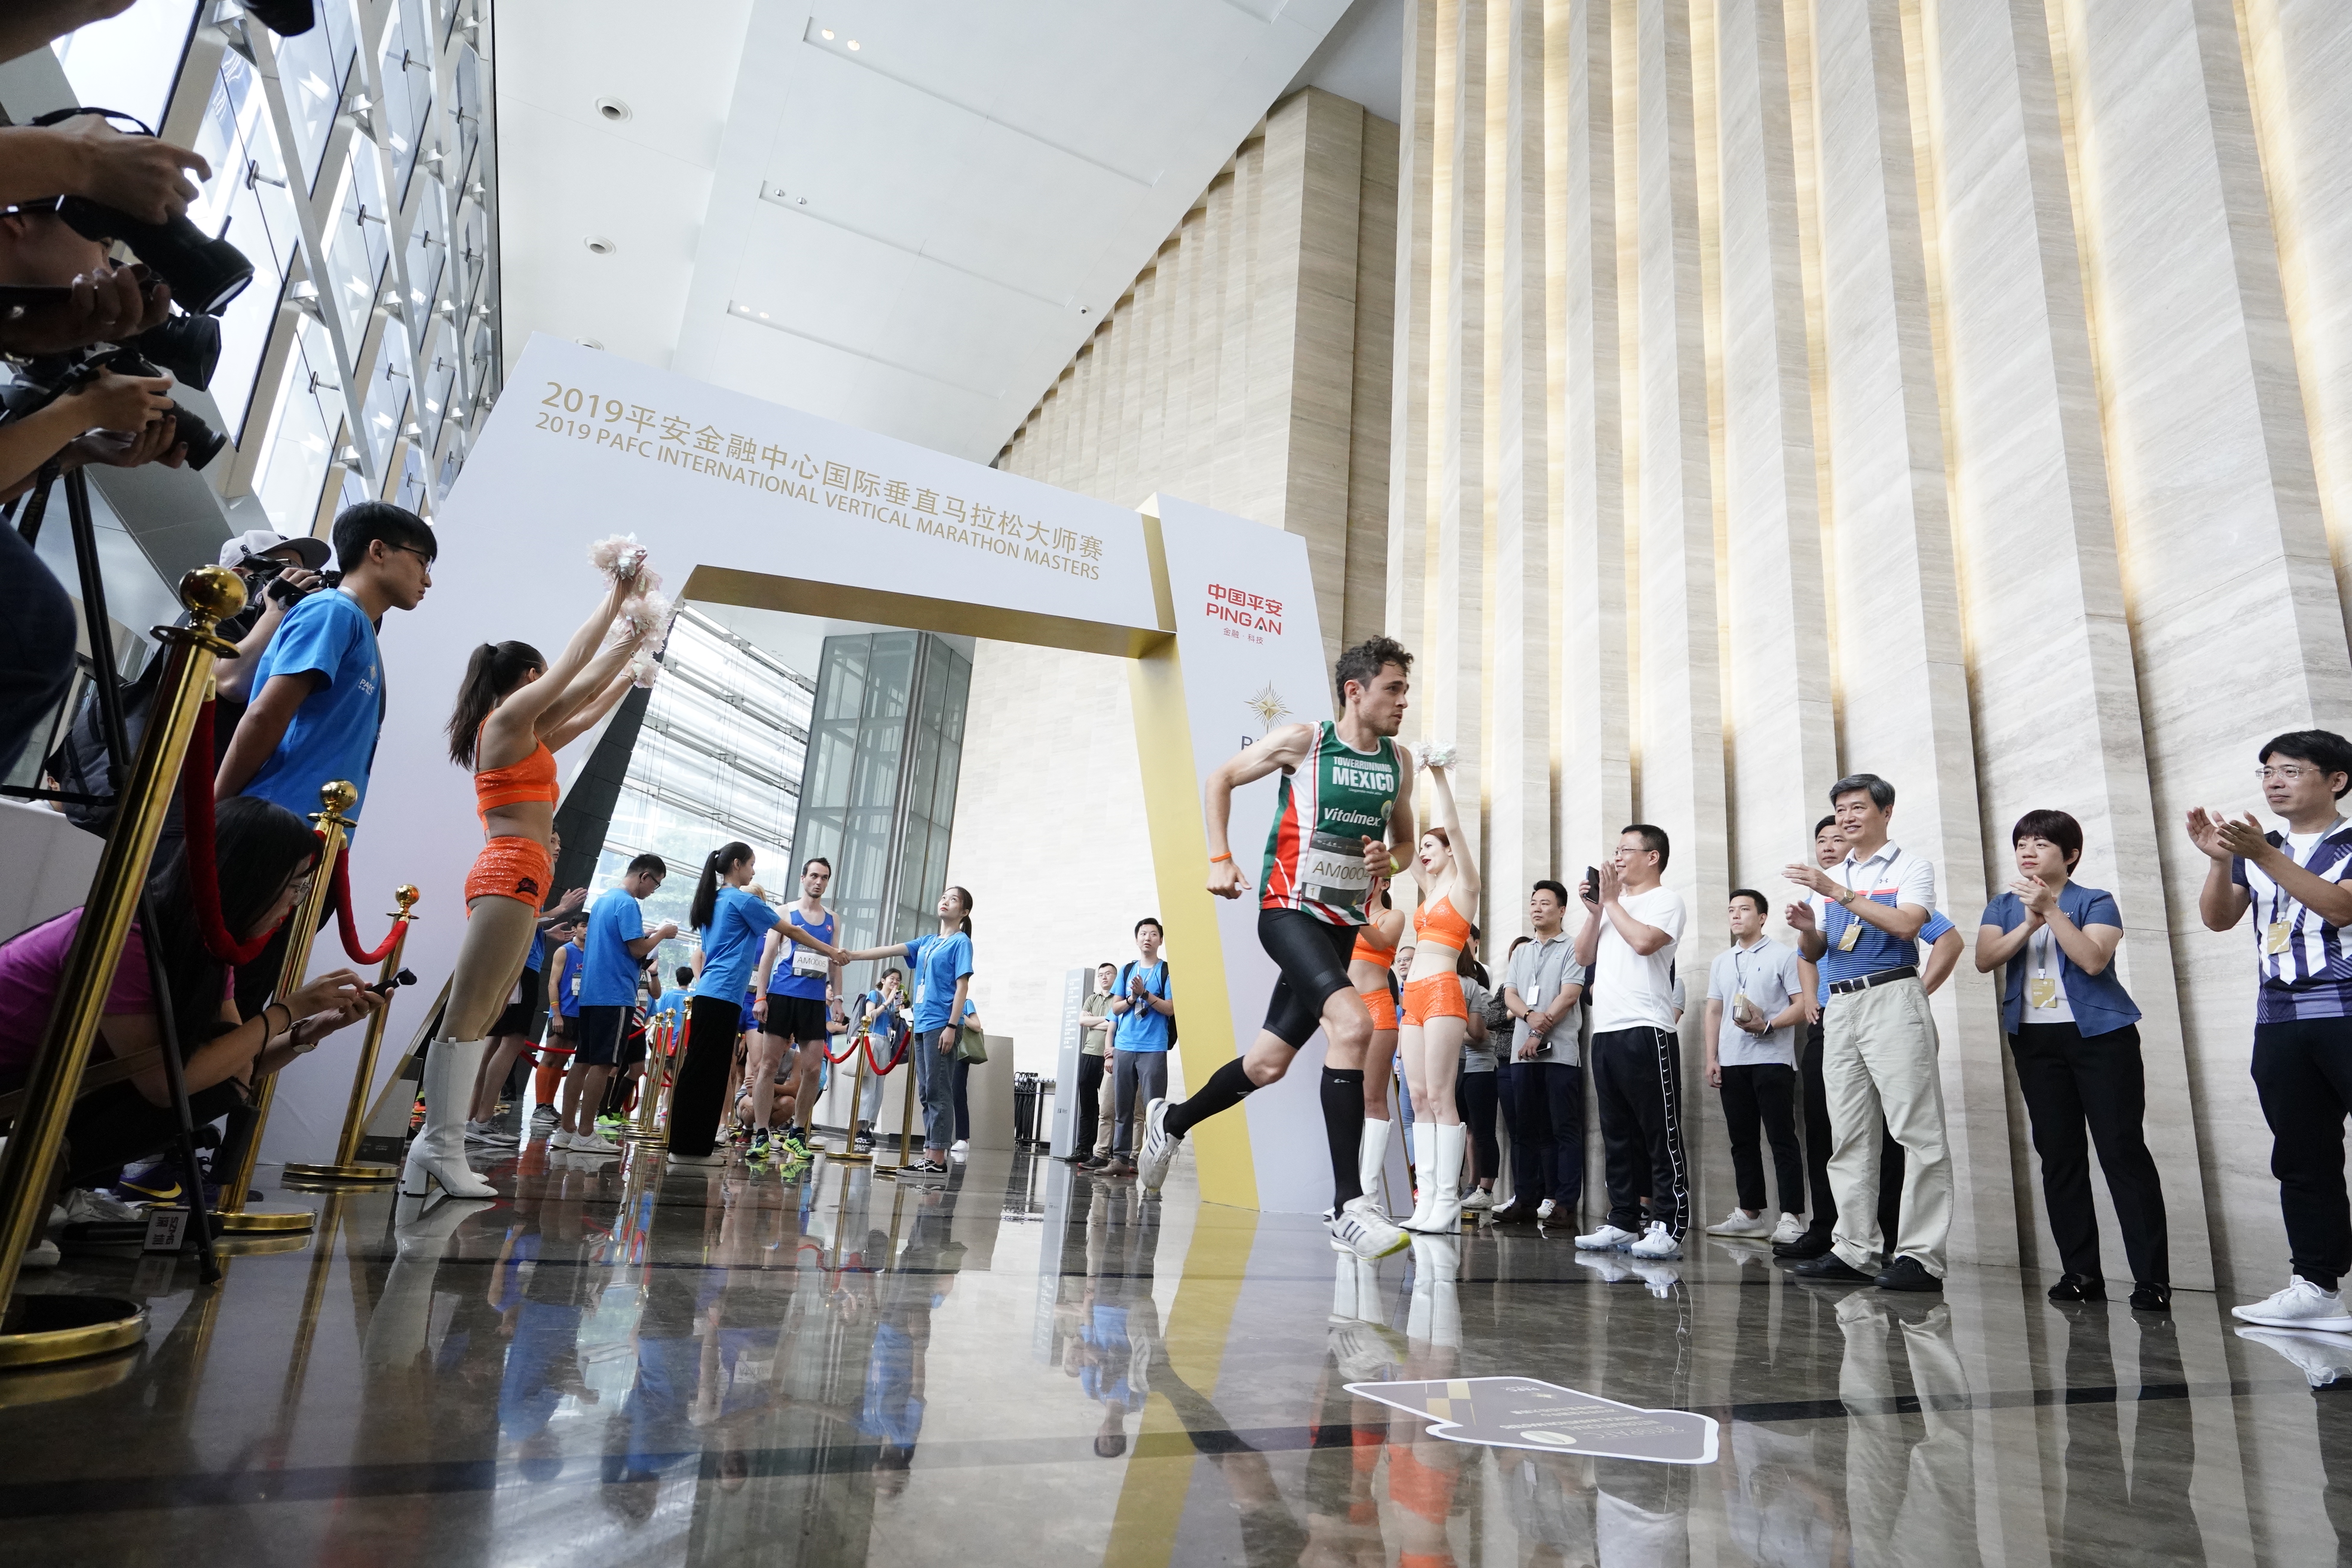 2019平安金融中心国际垂直马拉松大师赛